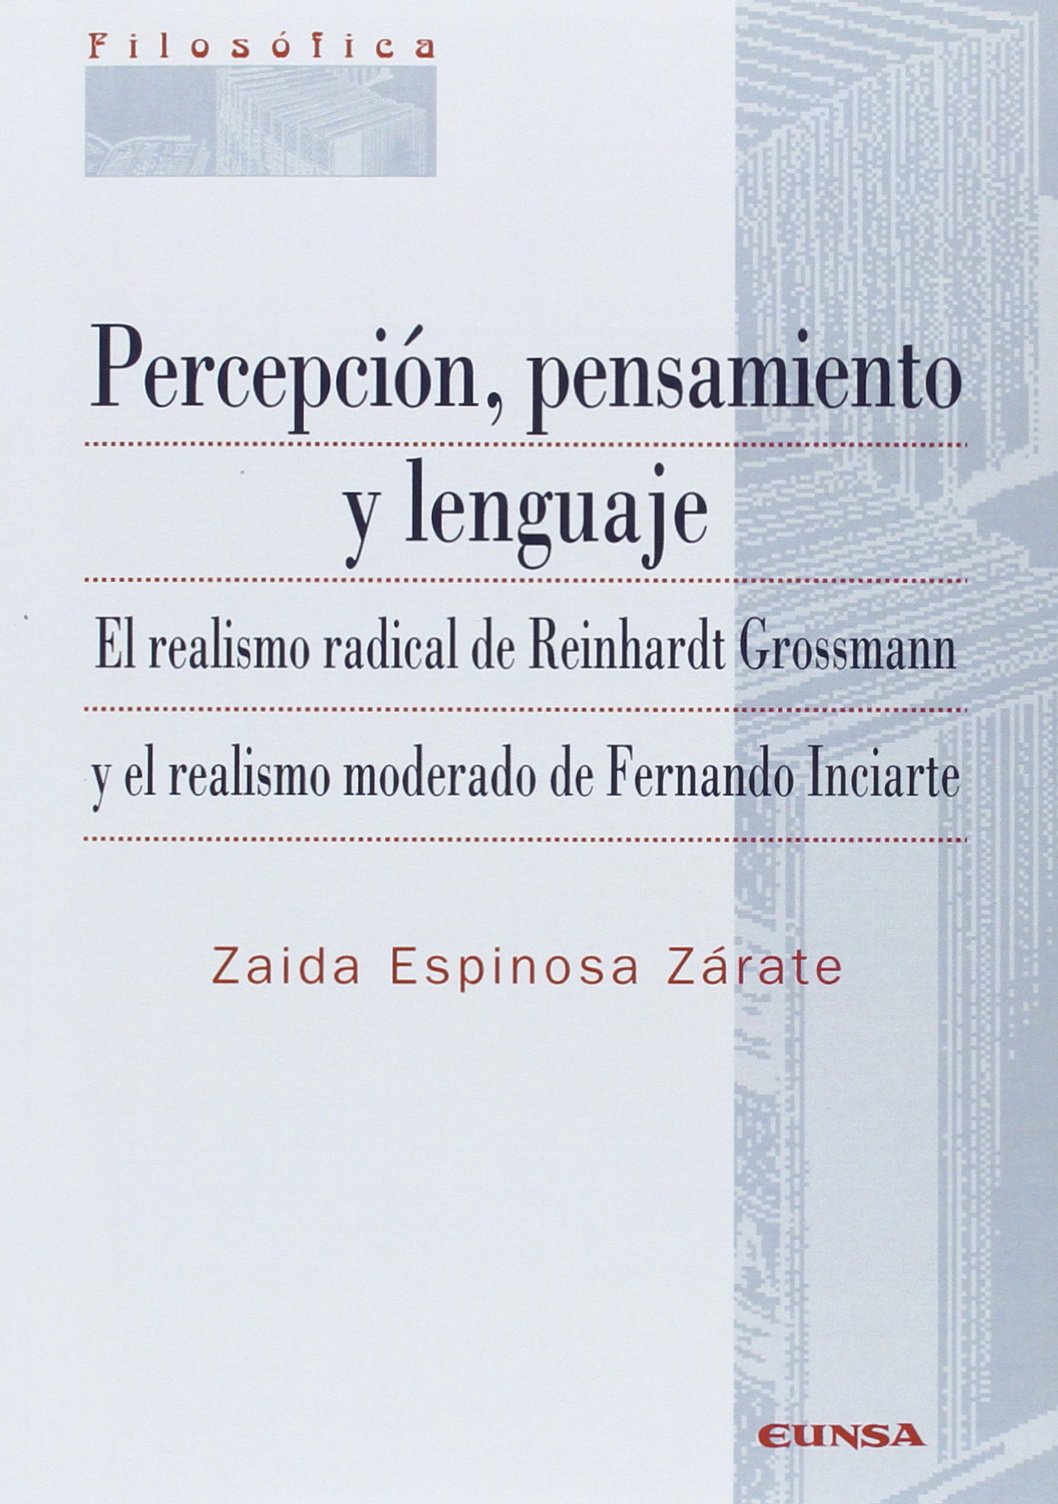 Imagen de portada del libro Percepción, pensamiento y lenguaje